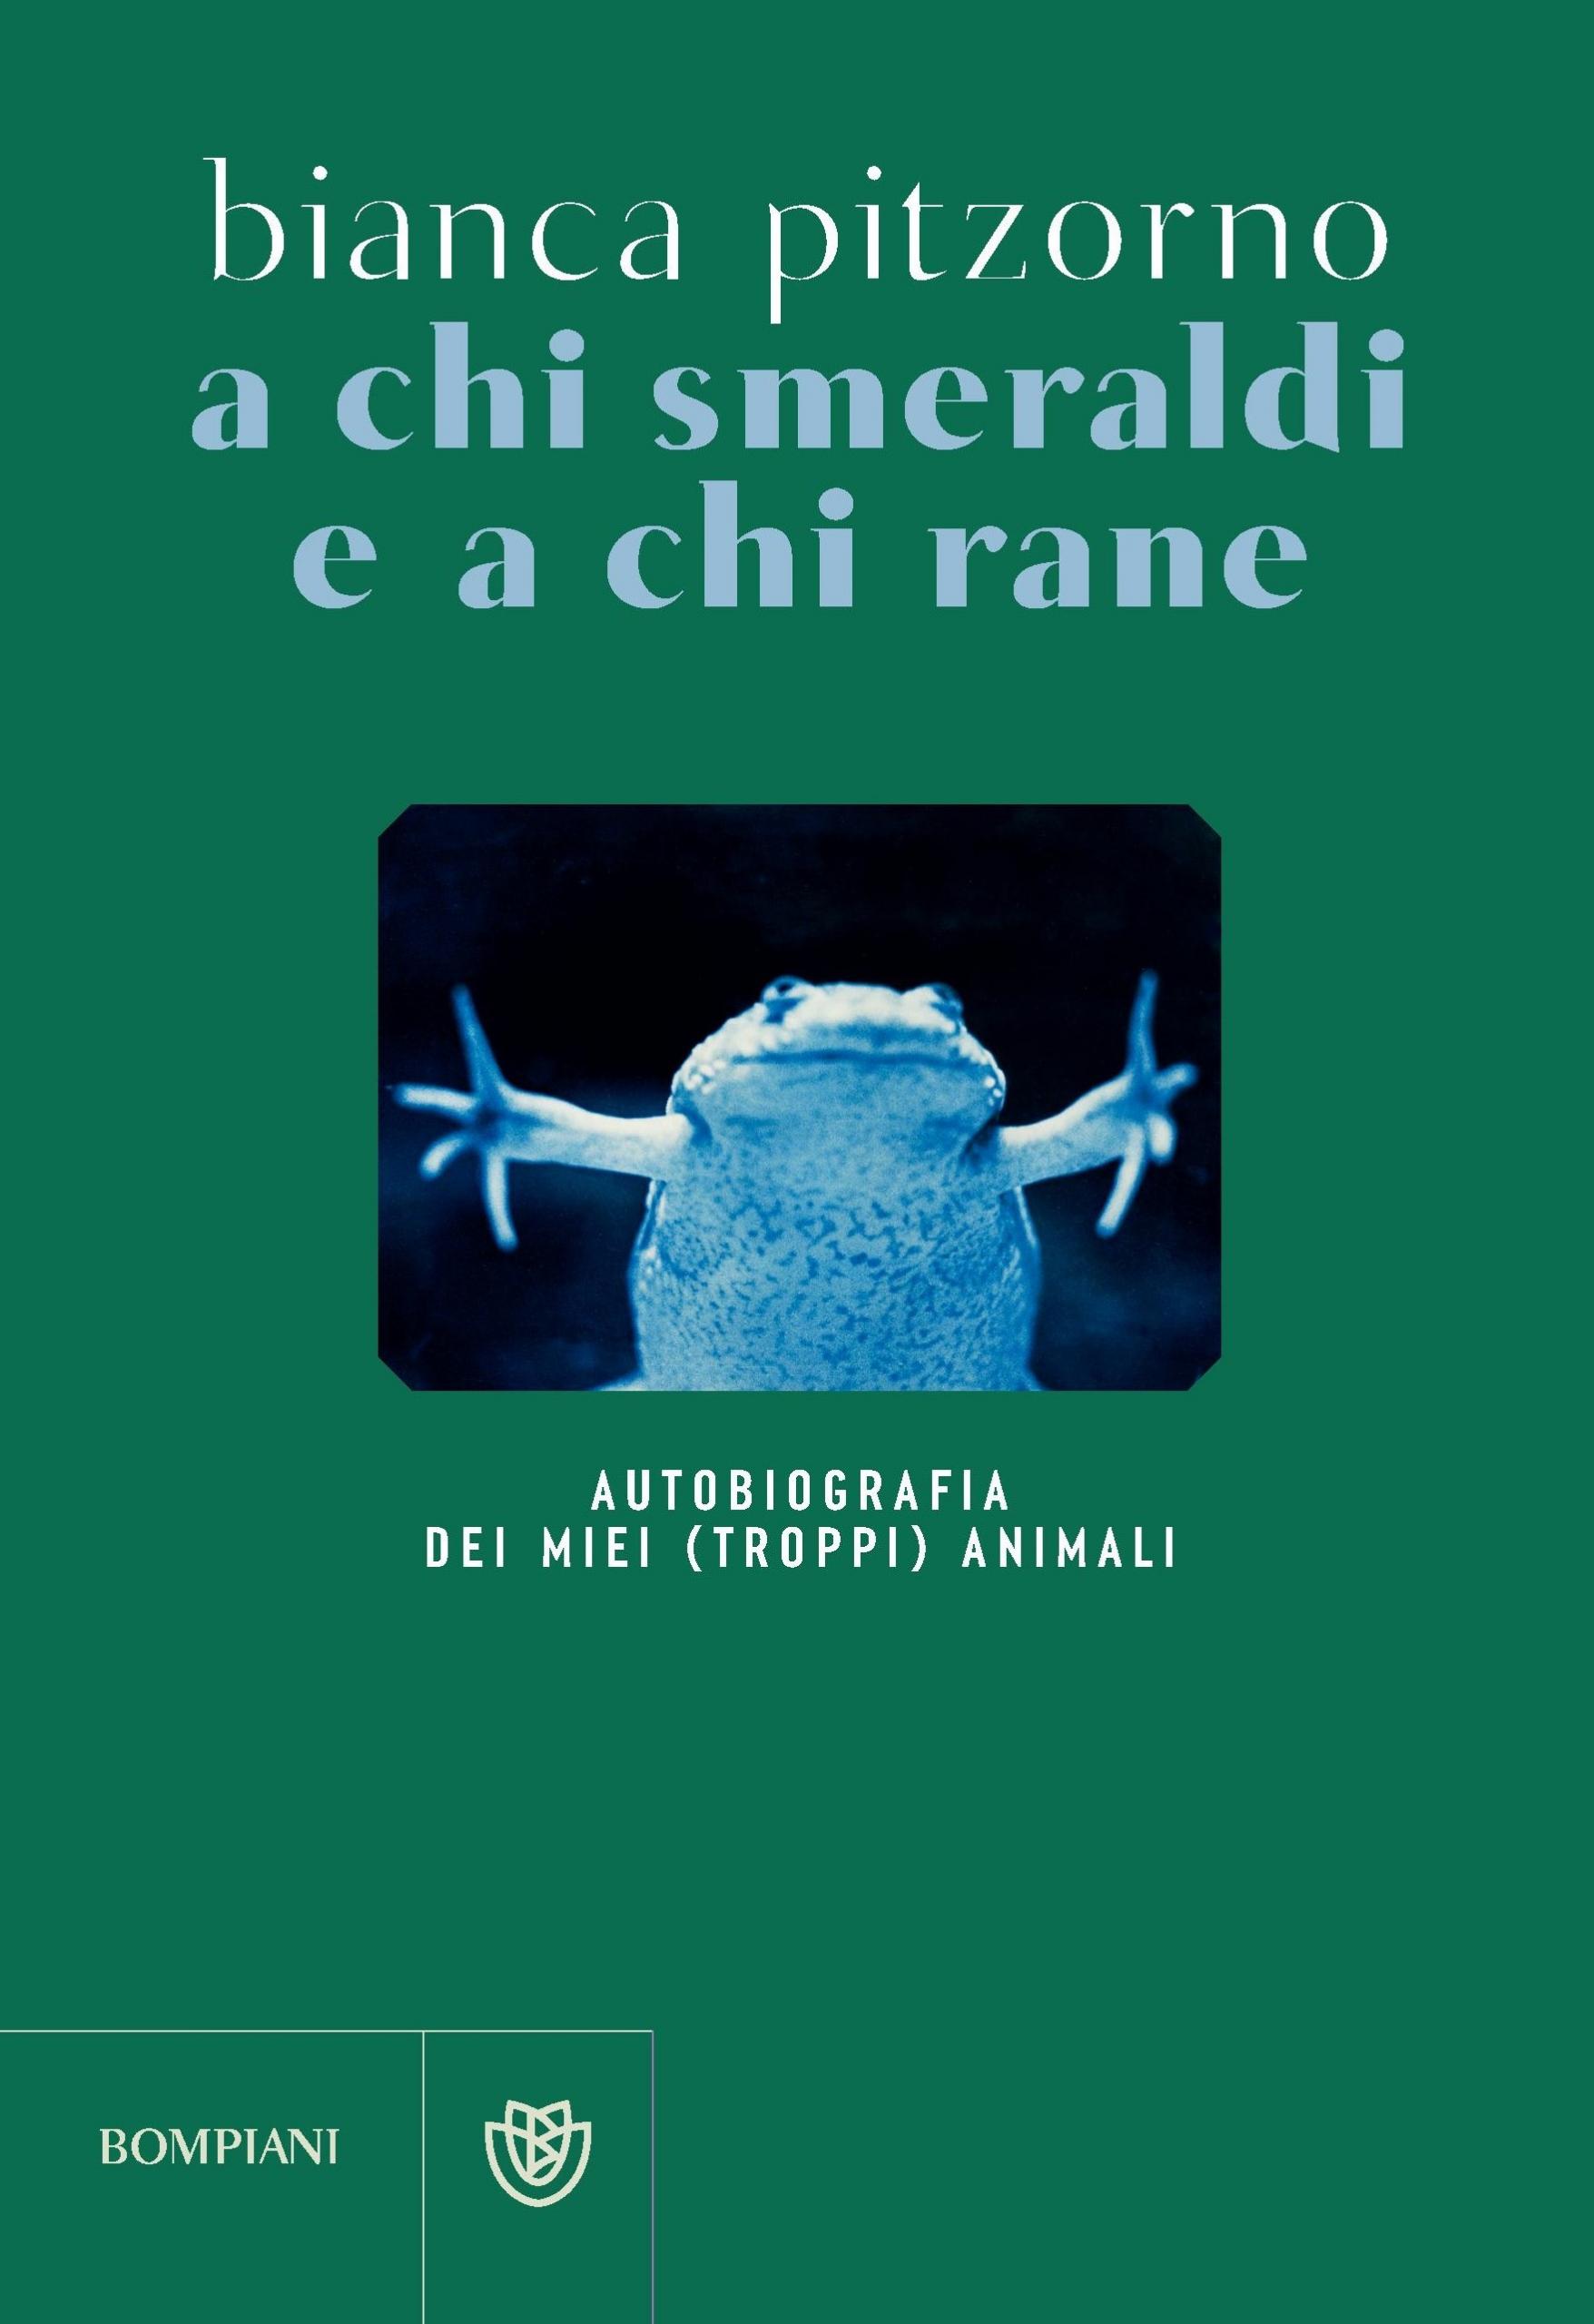 La copertina dell'autobiografia animale di Bianca Pitzorno a chi smeraldi e a chi rane